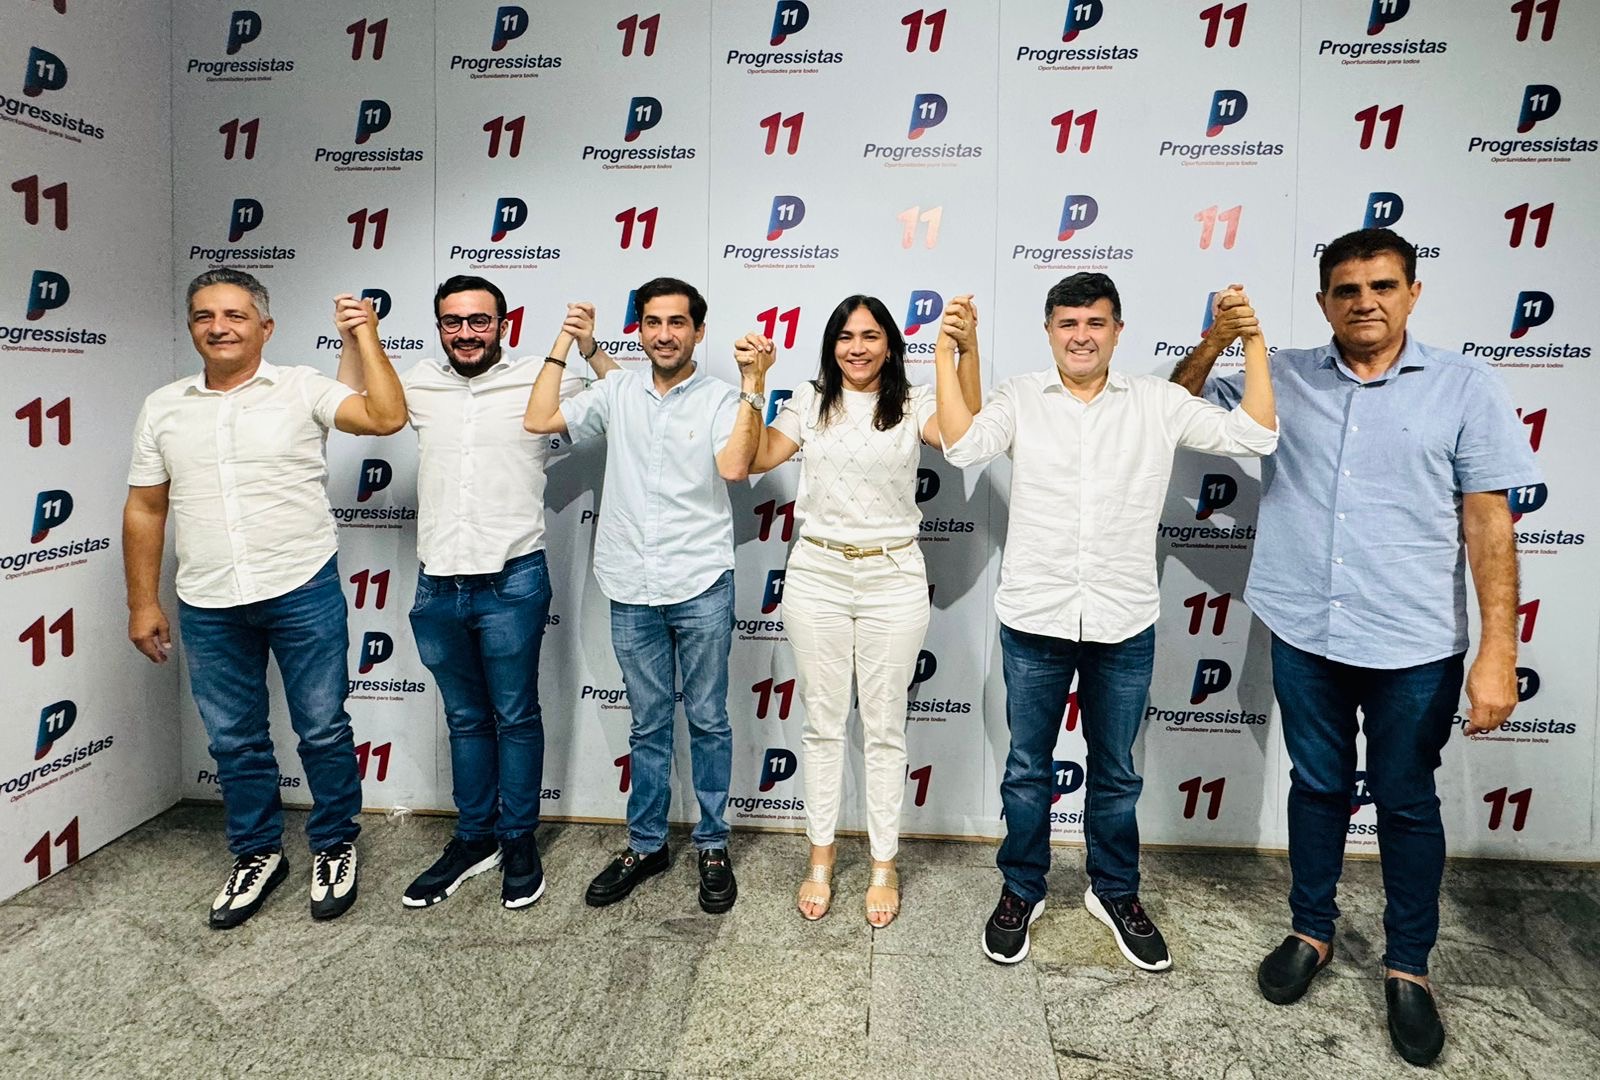 Rogéria Martins vai encarar disputa pela Prefeitura de Itaíba pelo PP